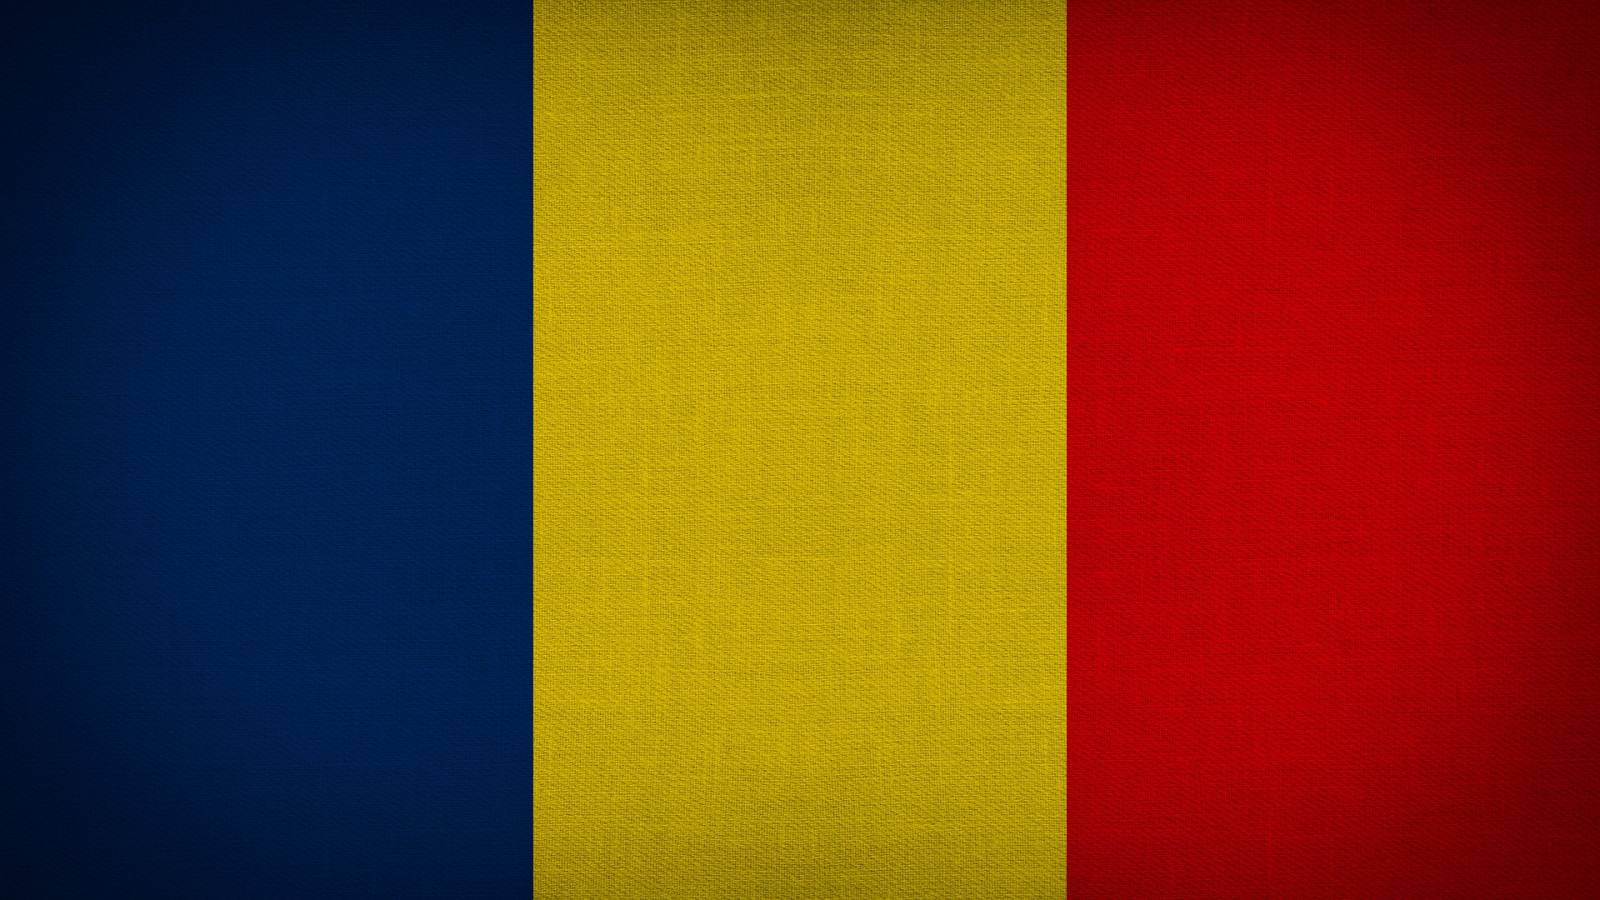 Constanta Scadere Cazurilor COVID-19 Romania